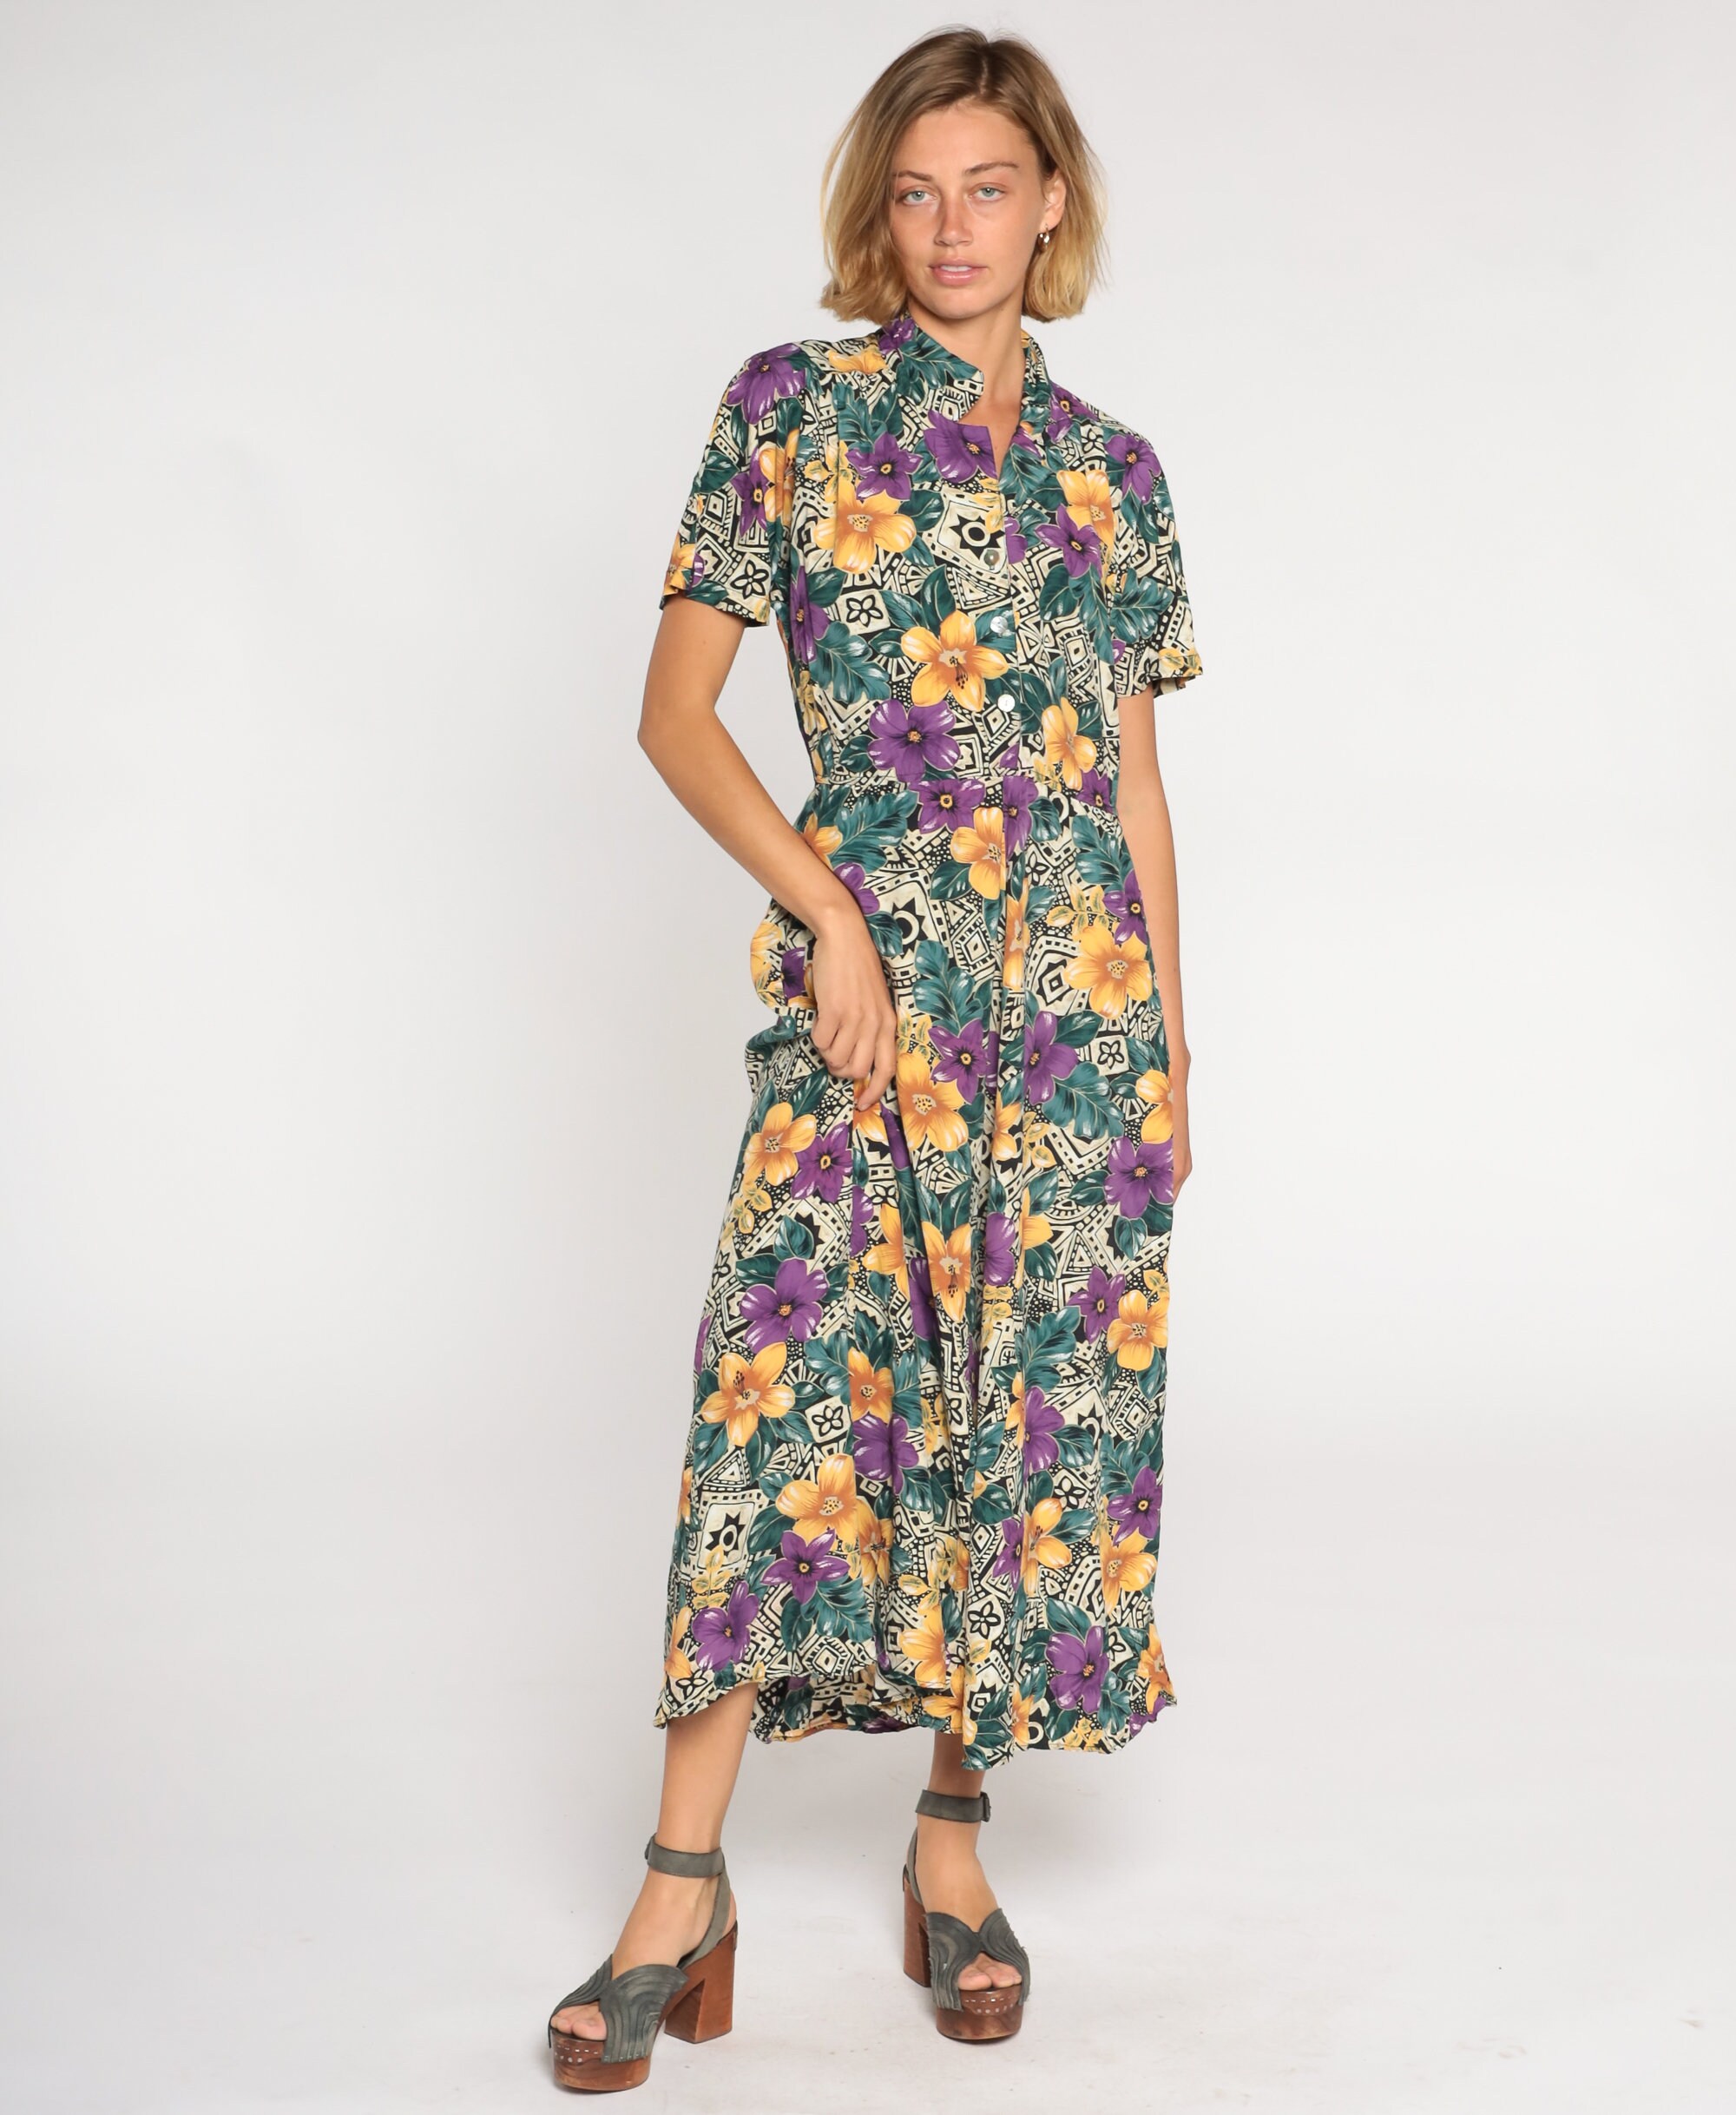 Tropical Floral Maxi Dress 90s Button Up Shirtwaist Dress Retro Boho ...